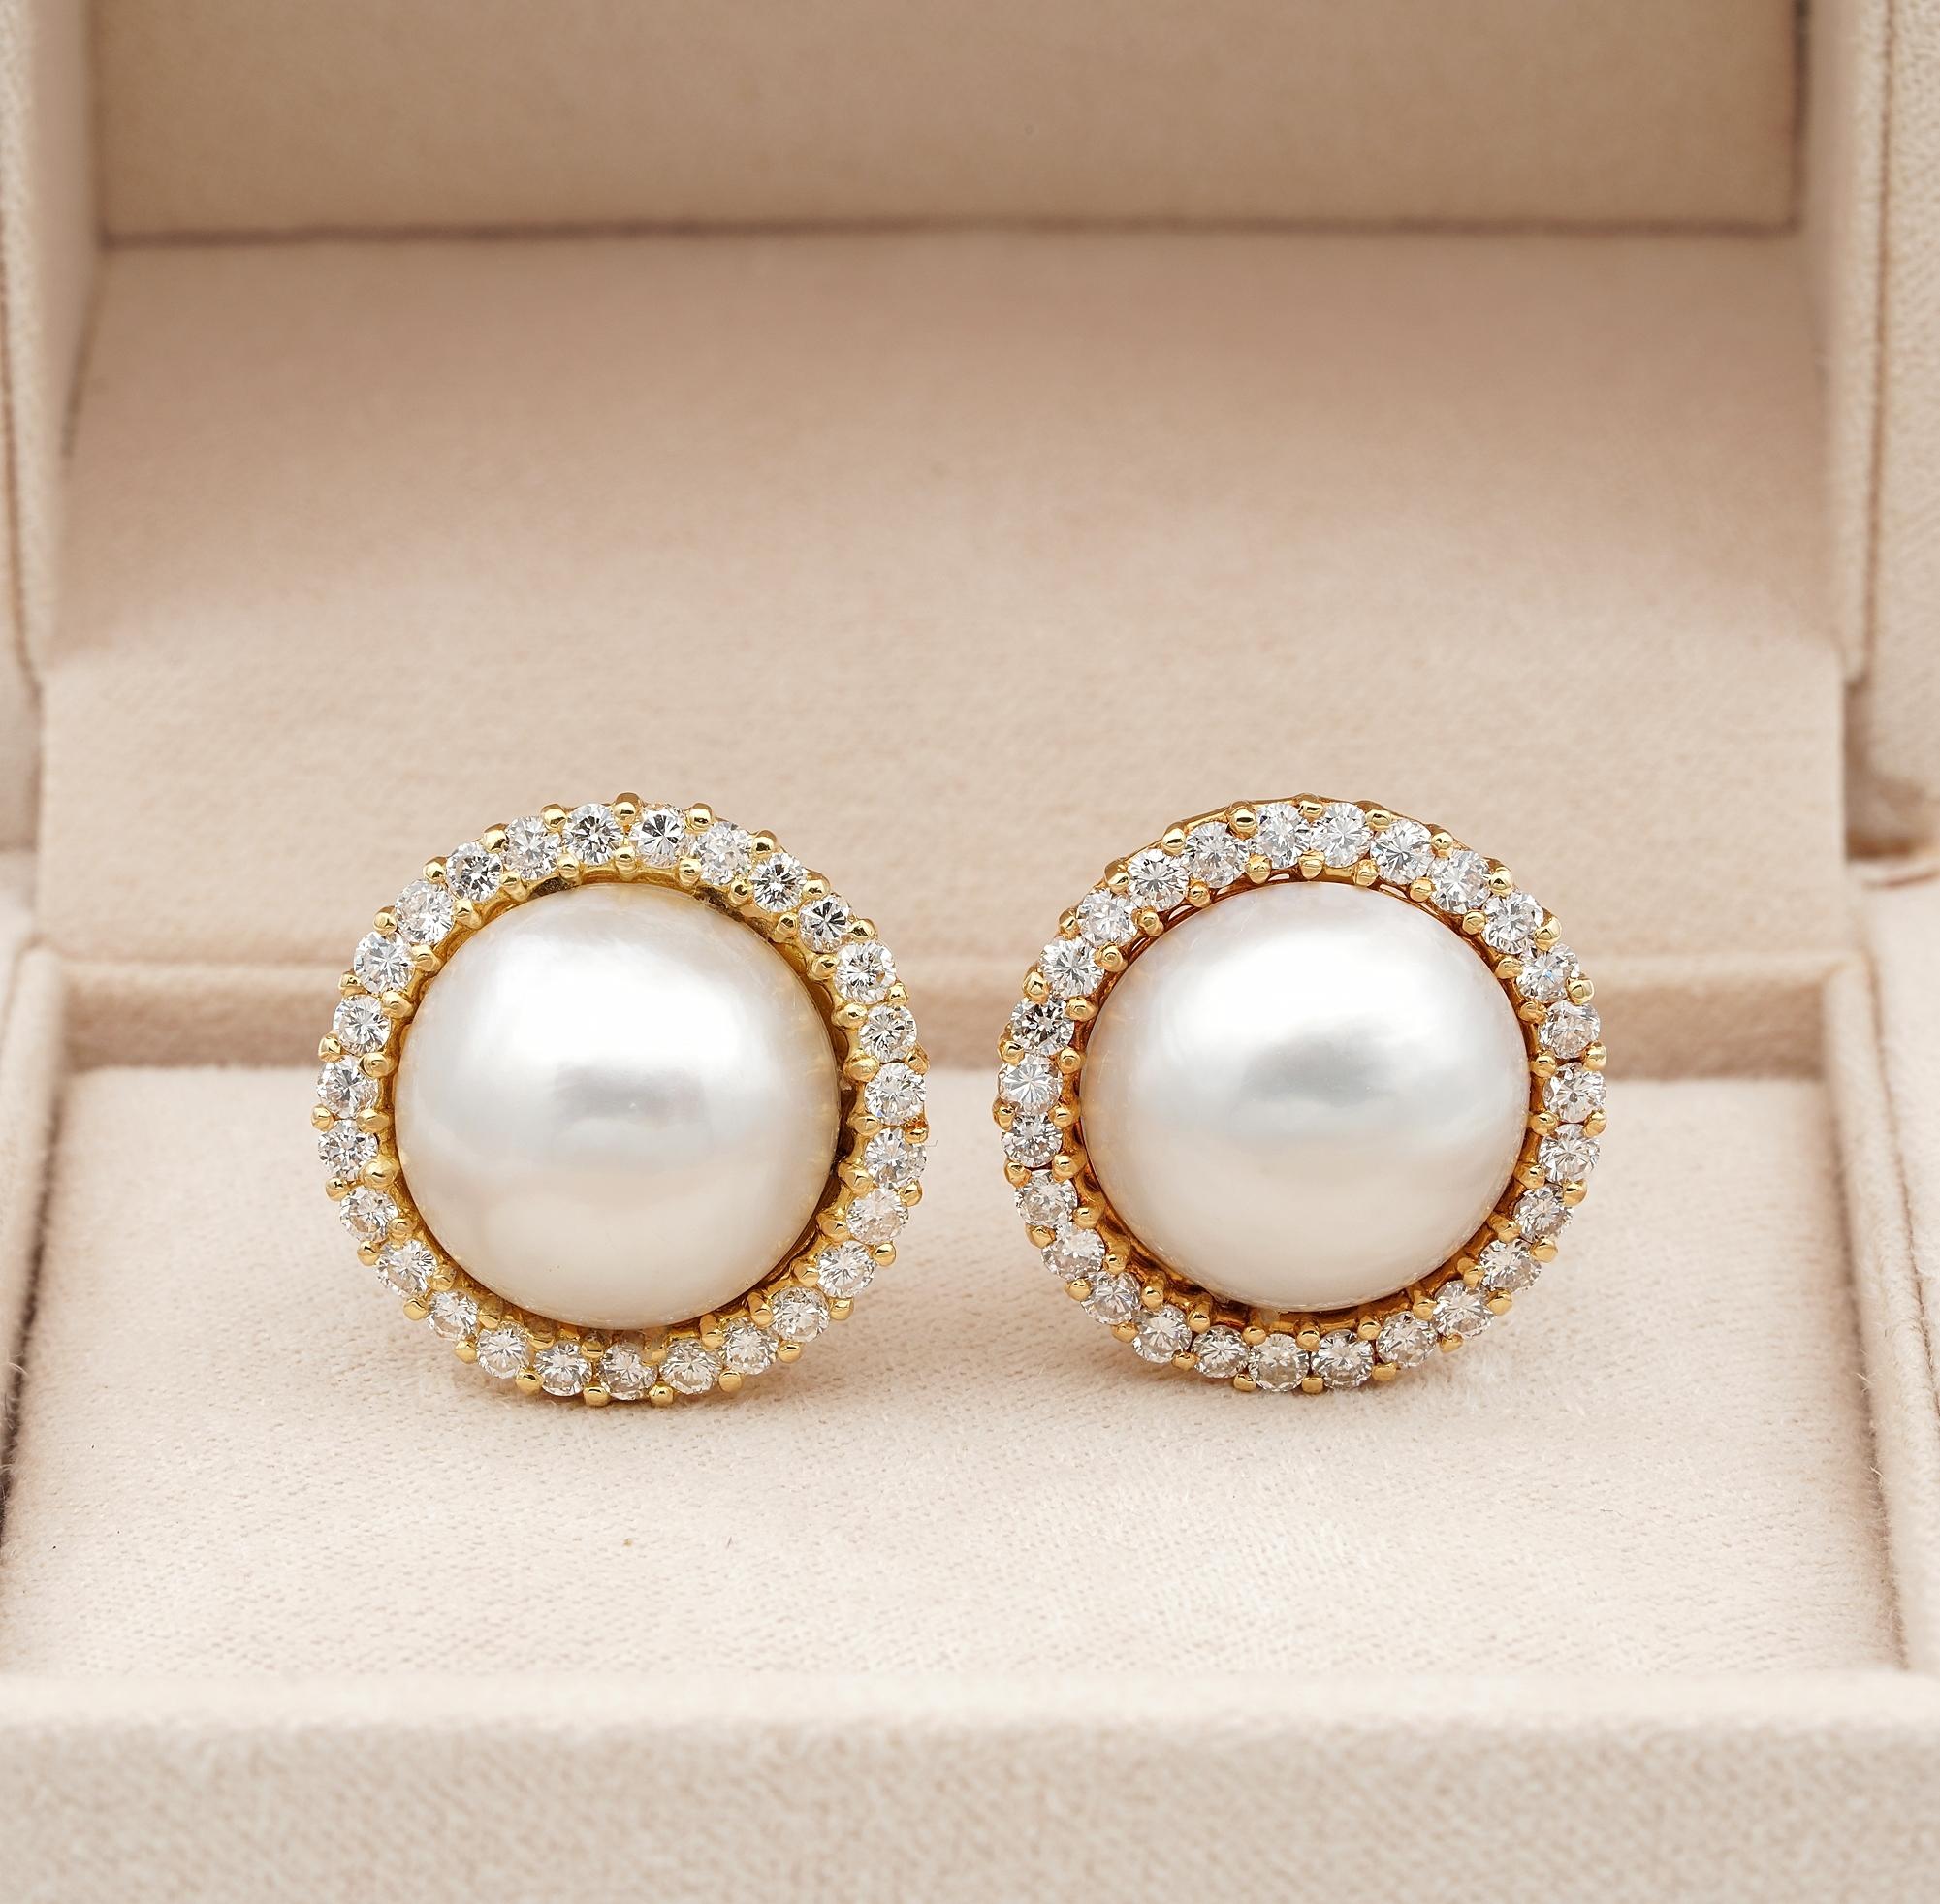 Das stilvolle Muss
Hochwertig in allen Belangen sind diese Vintage-Ohrringe mit Londoner Importpunzen von 1985 - einzeln handgefertigt aus massivem 18 KT Gold
Durchgehend prächtig verarbeitet, im Wesentlichen handgefertigt, sogar die Perlen sind mit